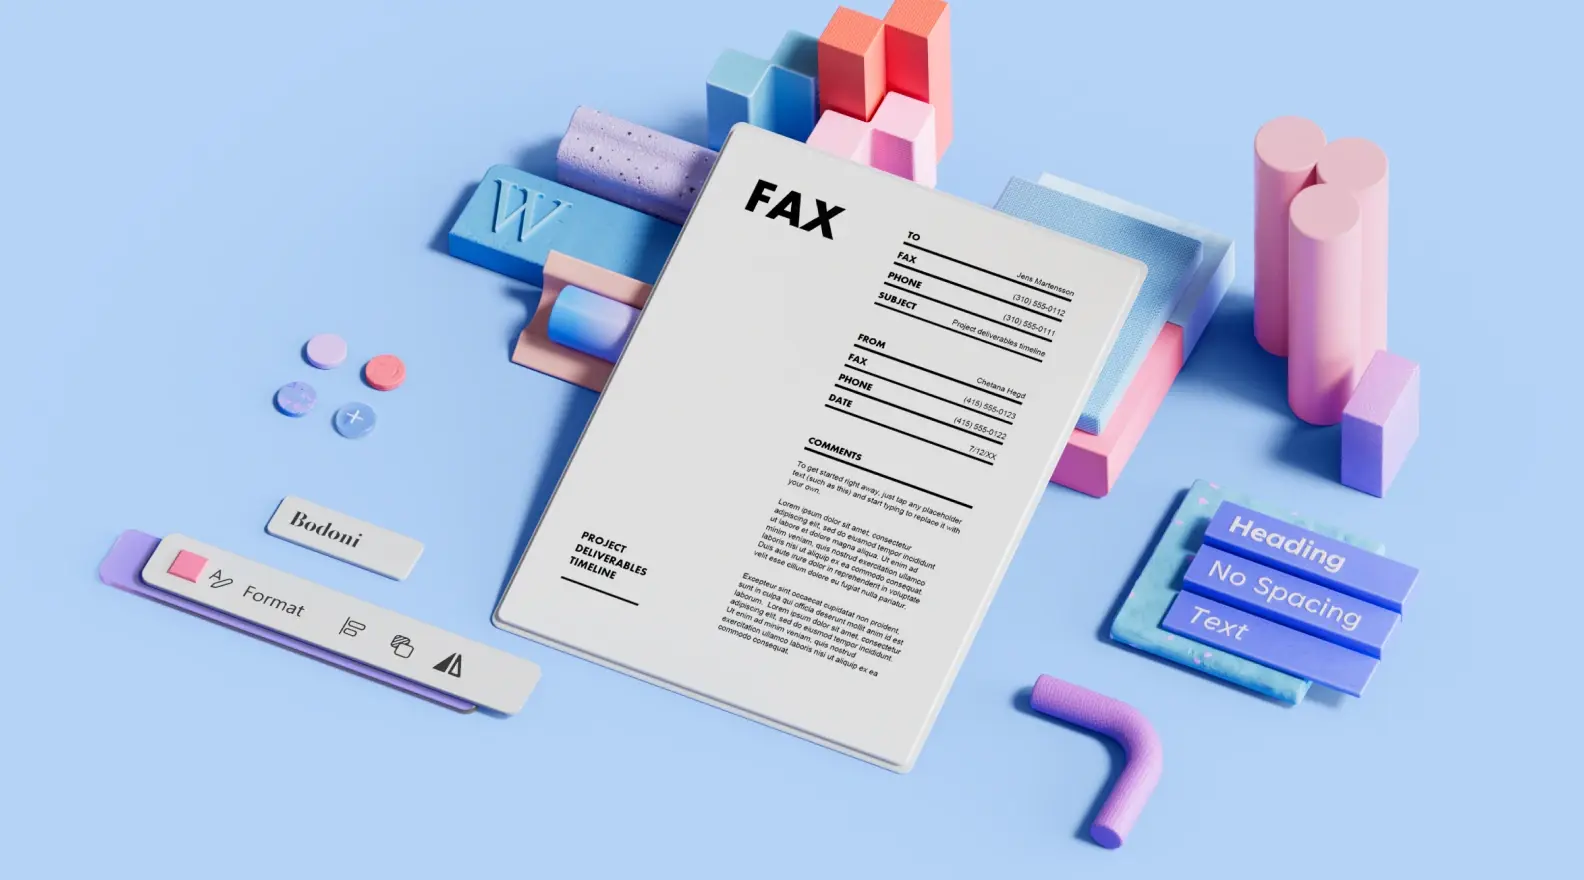 Šablóna sprievodného listu k faxom obklopená prvkami 3D dizajnu